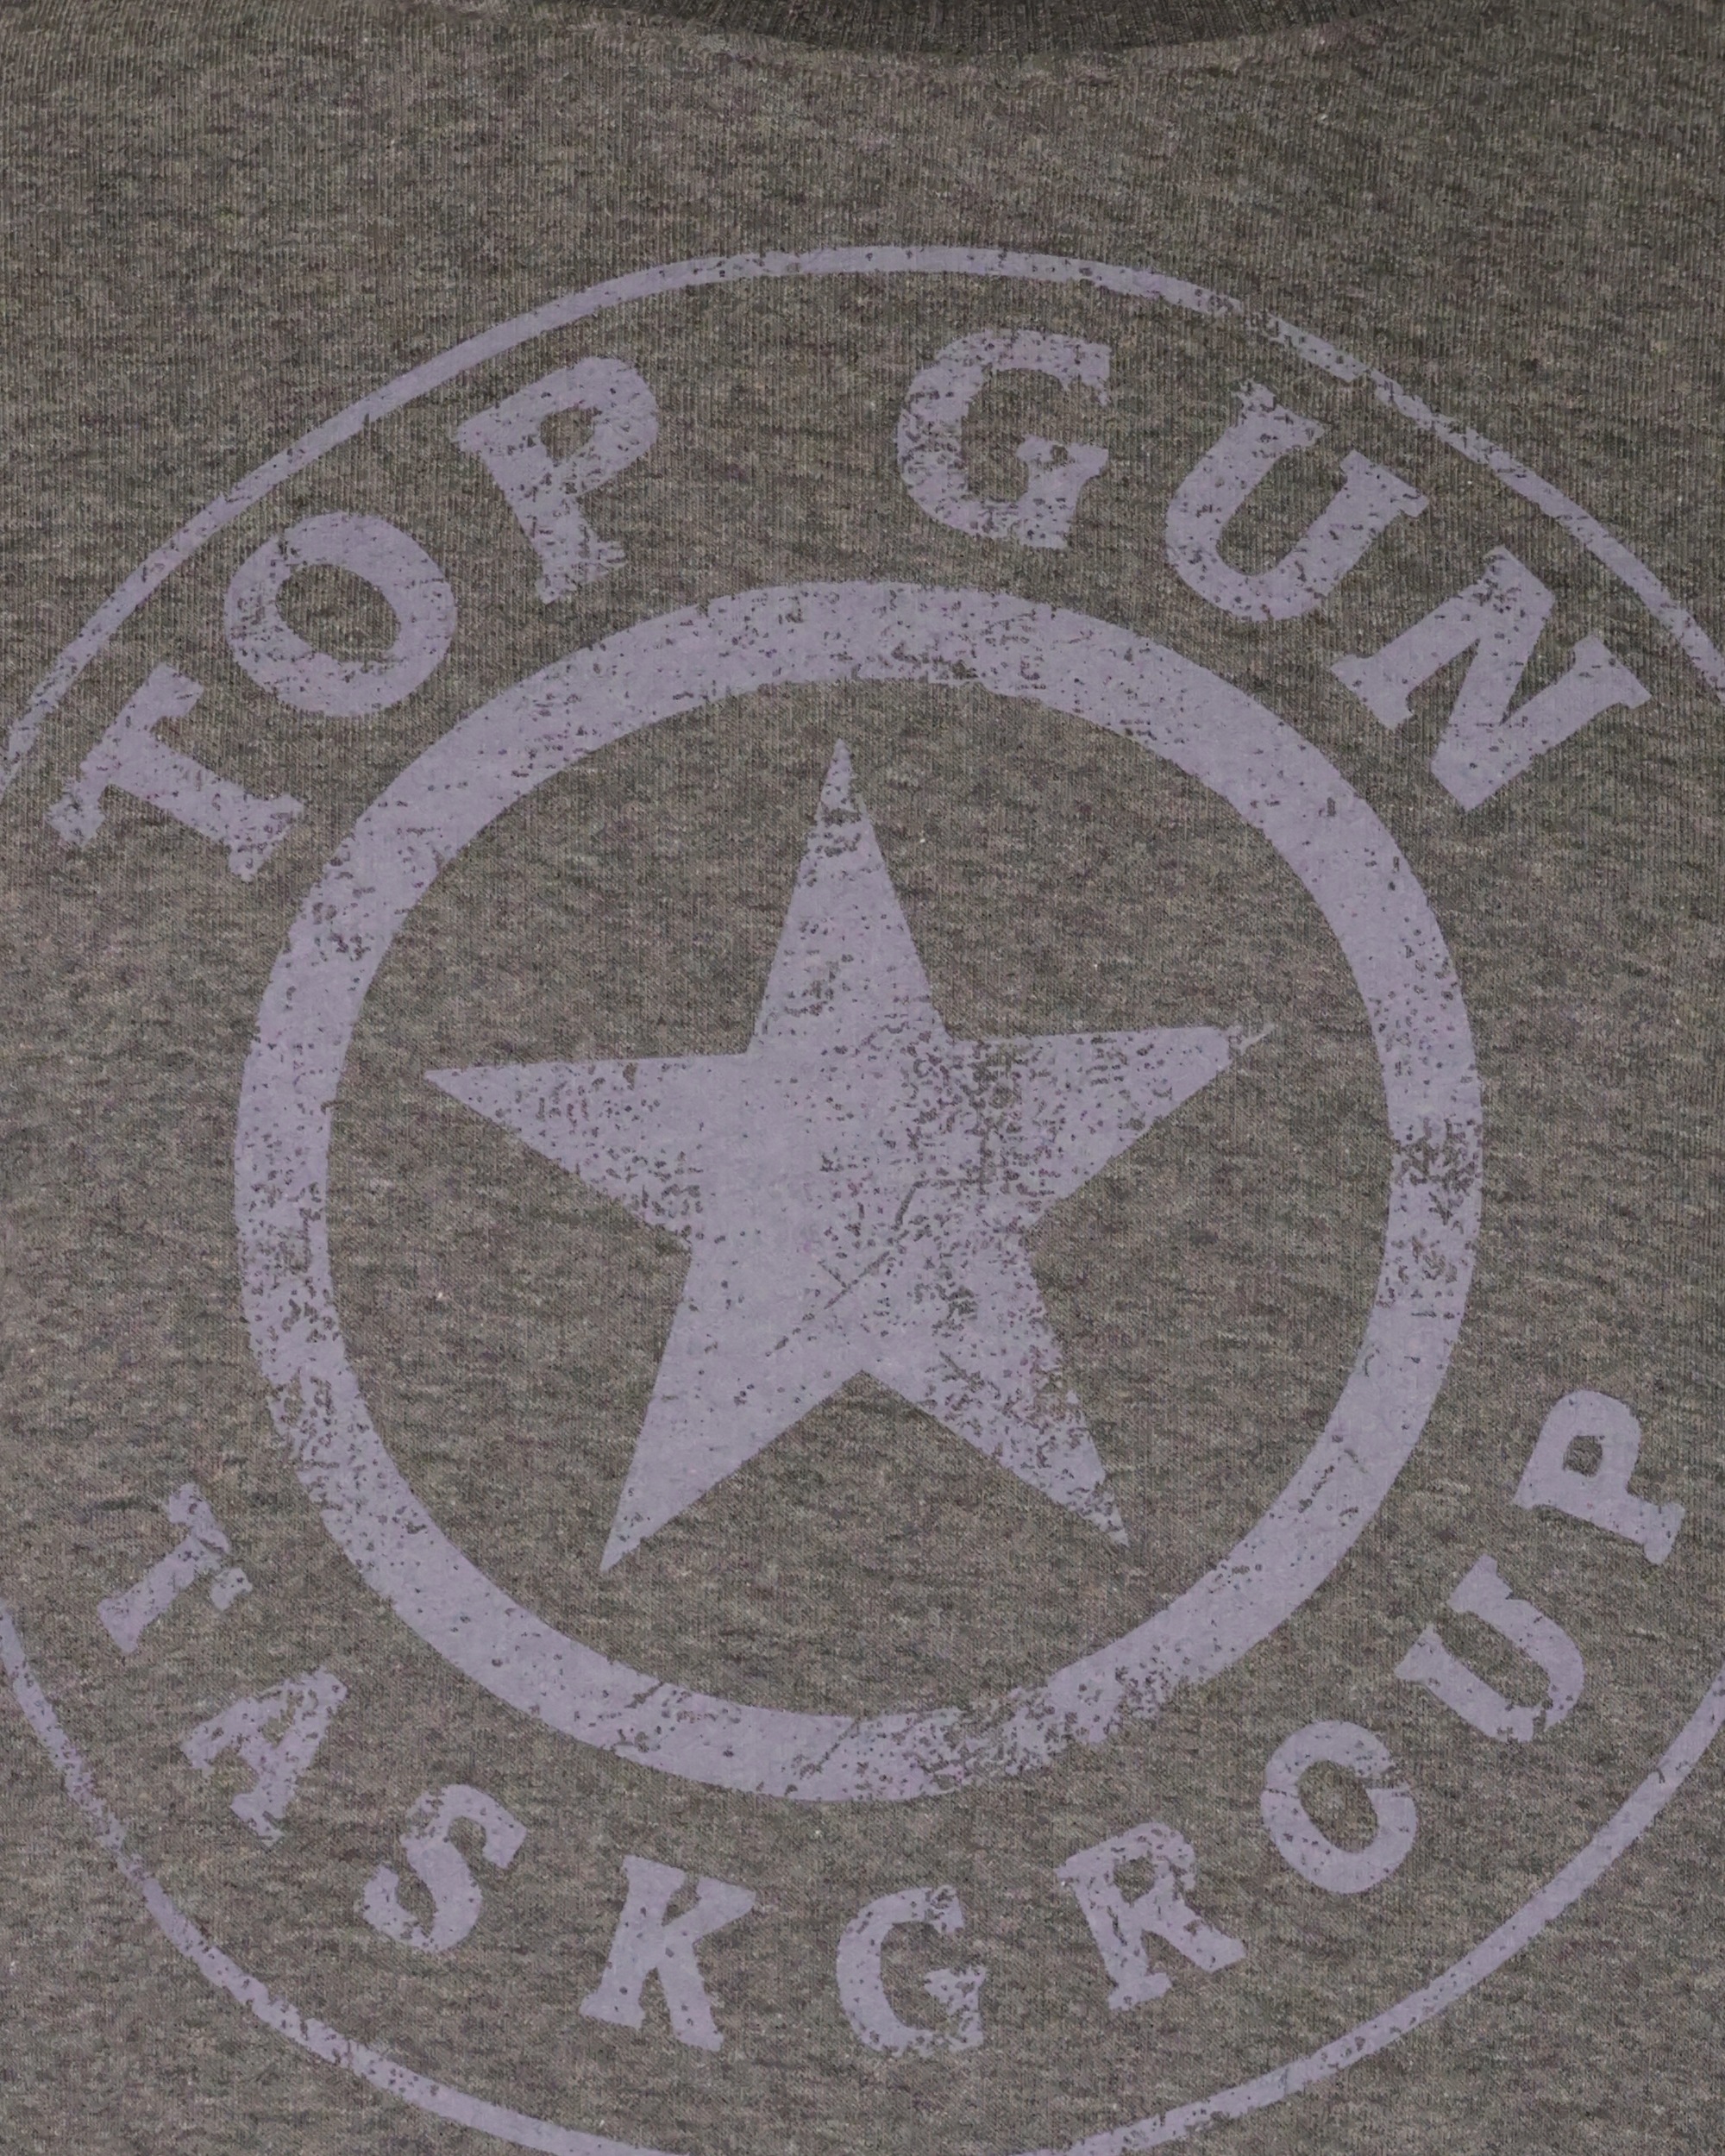 TOP GUN Sweater »TG20212106« ▷ für | BAUR